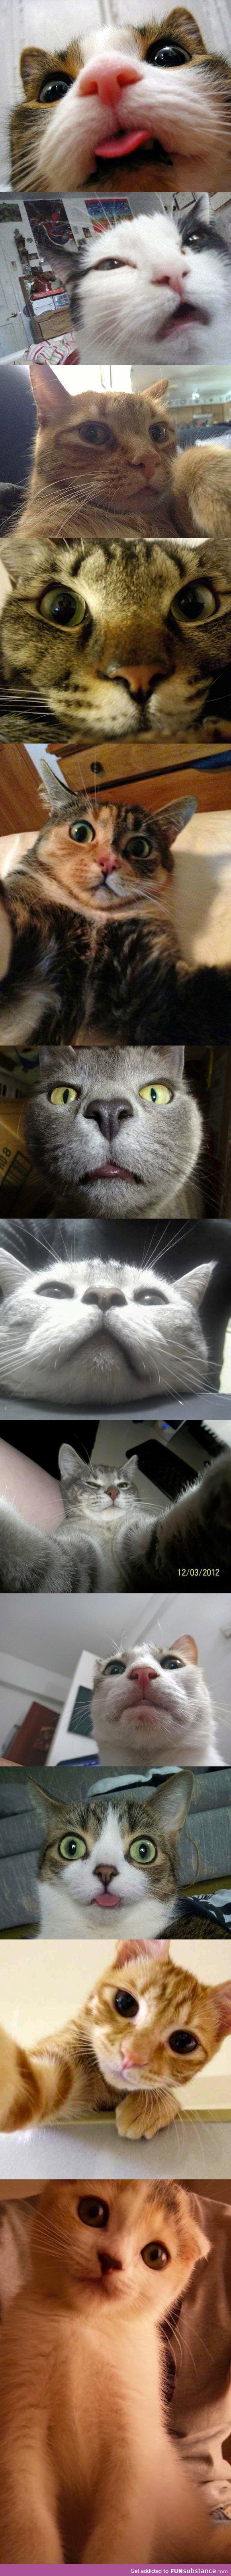 Cats take pretty good selfies...